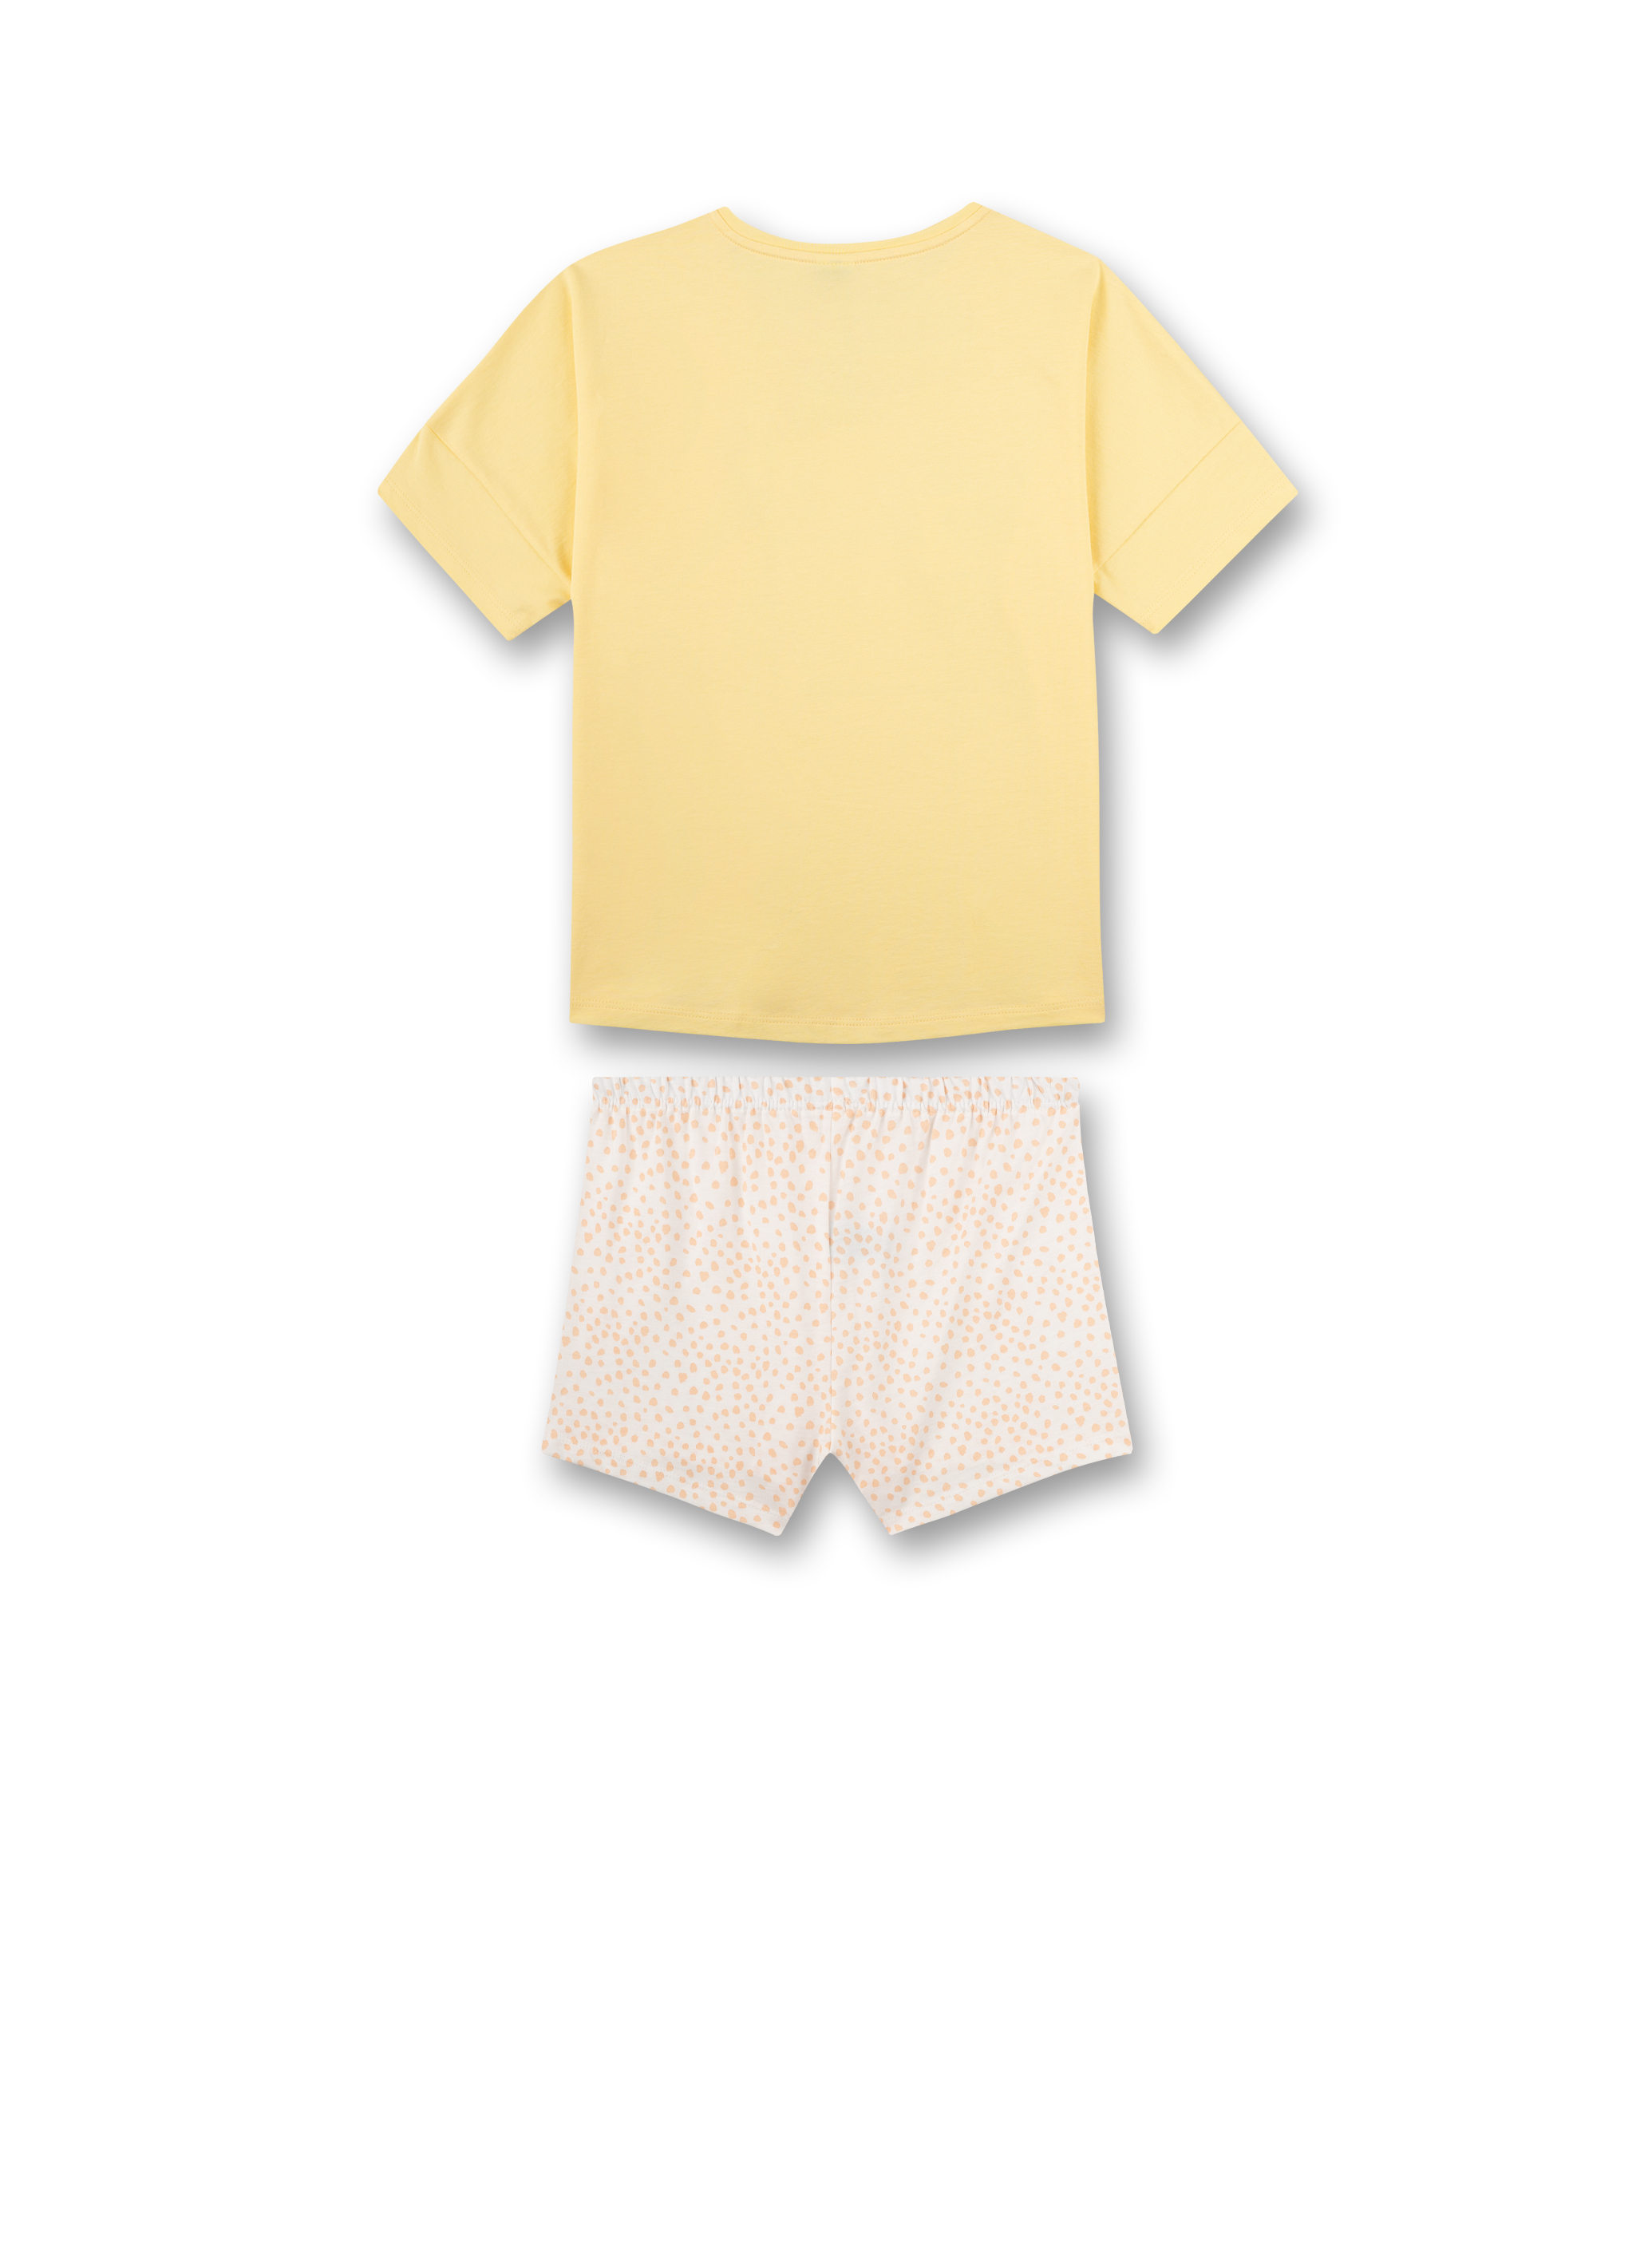 Mädchen-Schlafanzug Gelb